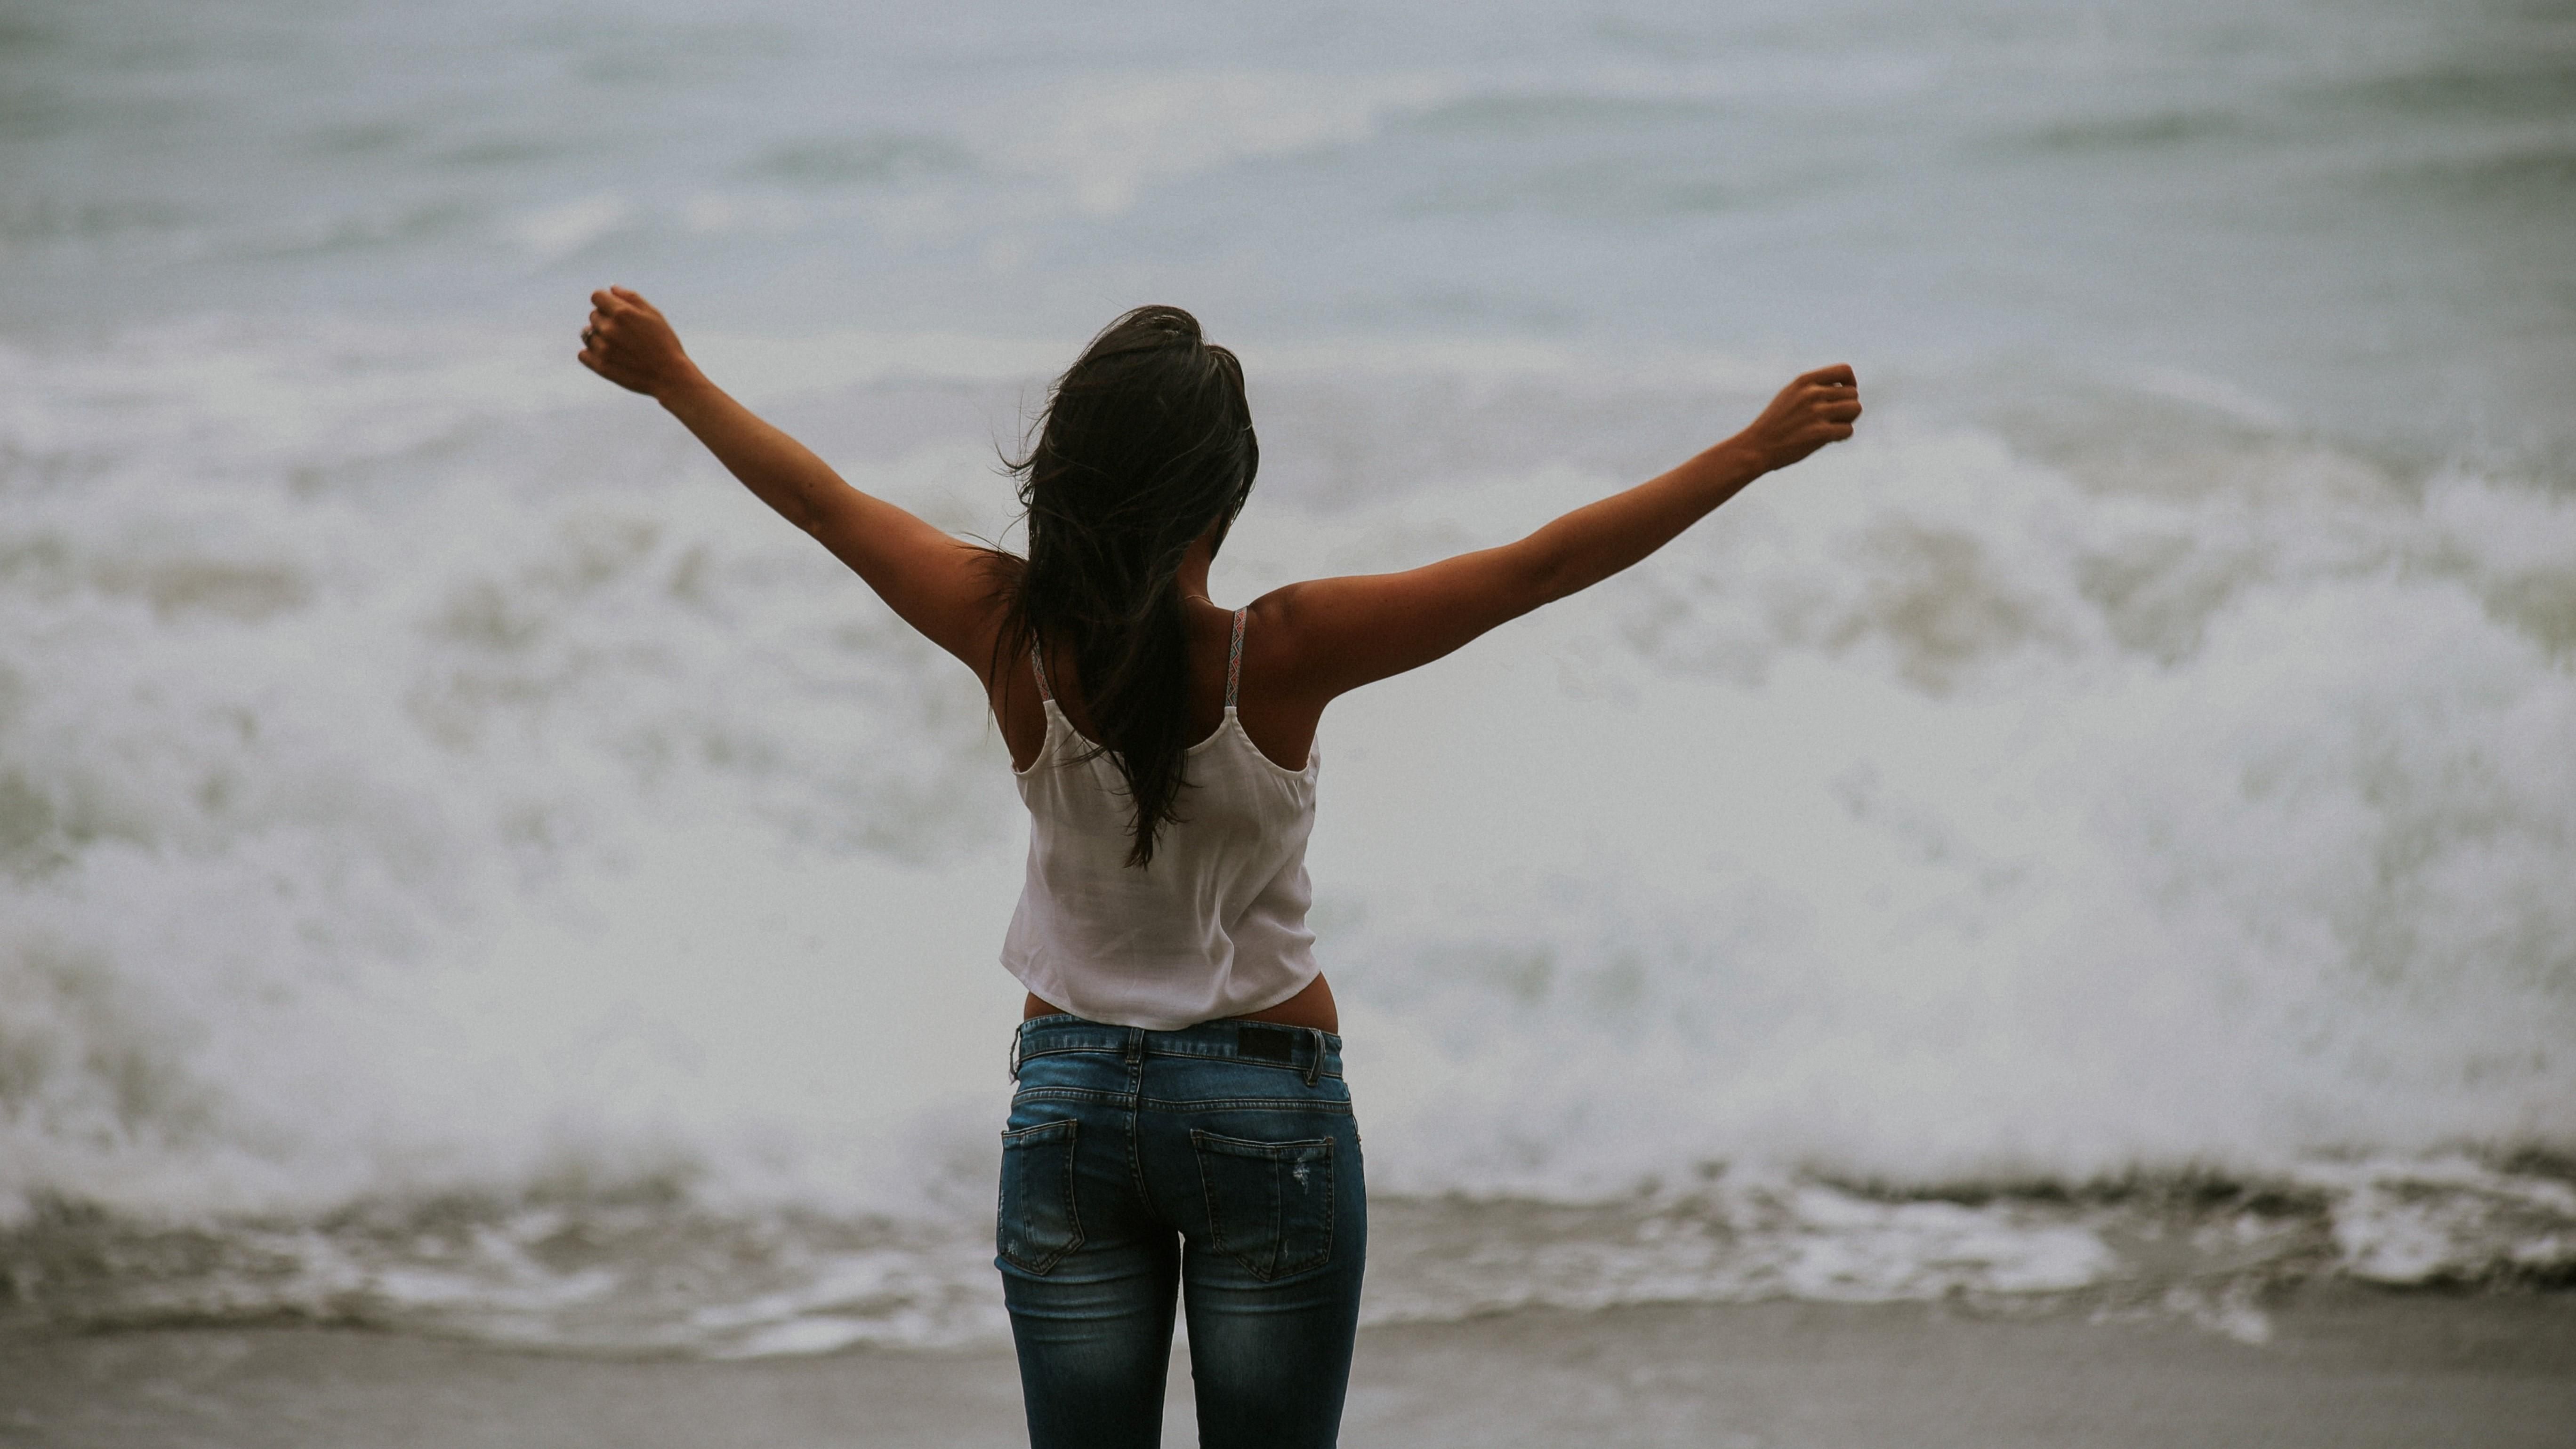 Egy lány tárt karokkal áll egy vízparton